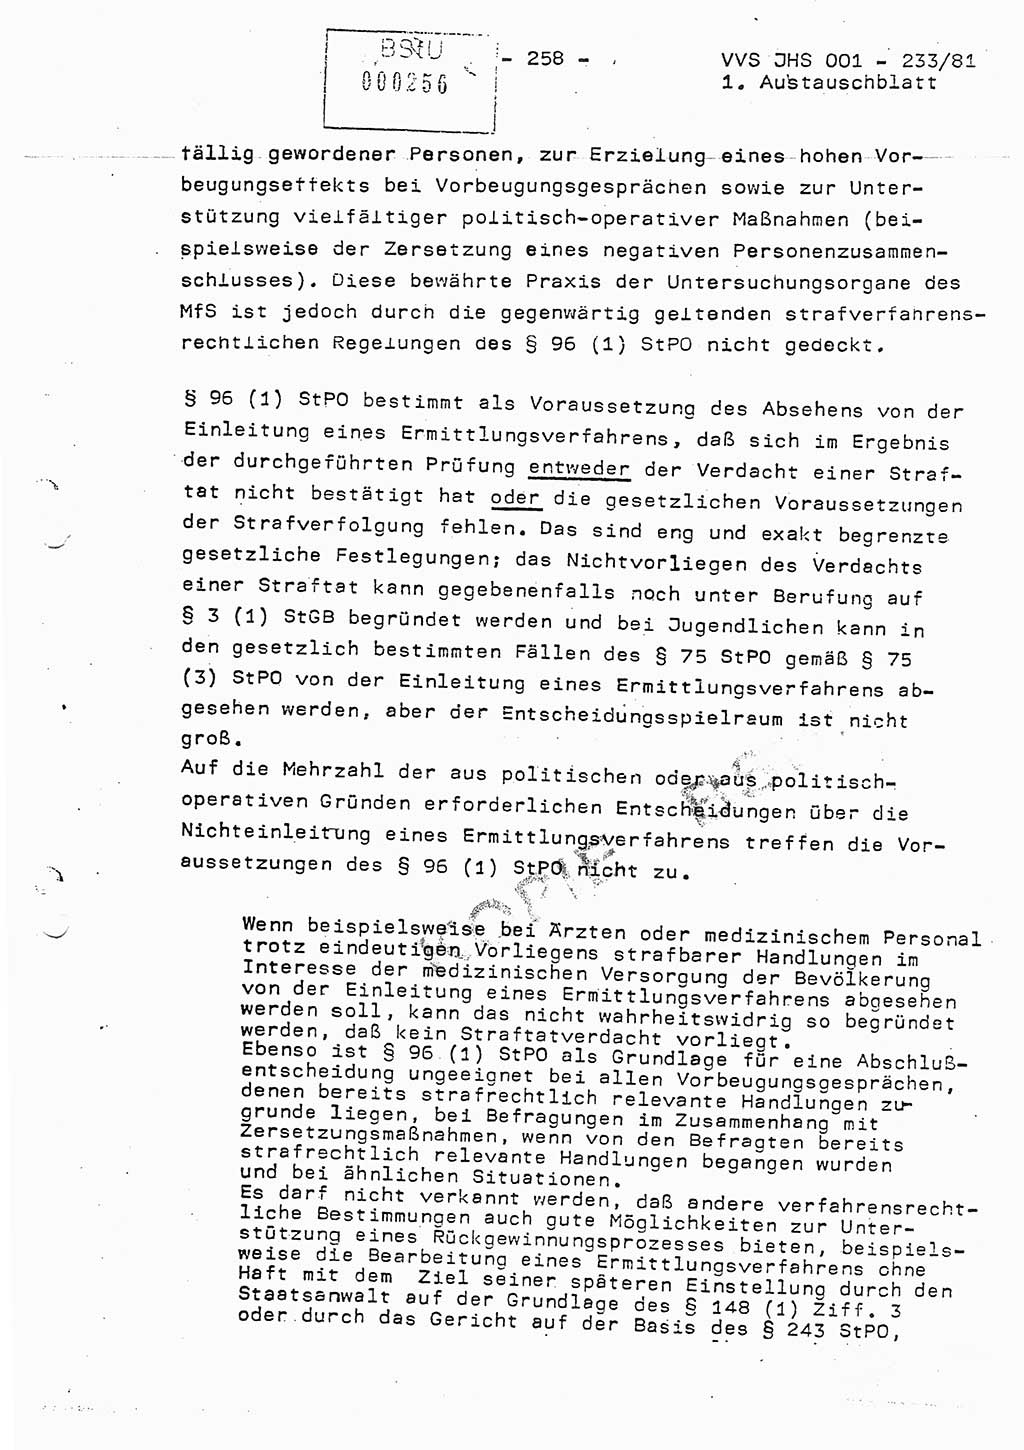 Dissertation Oberstleutnant Horst Zank (JHS), Oberstleutnant Dr. Karl-Heinz Knoblauch (JHS), Oberstleutnant Gustav-Adolf Kowalewski (HA Ⅸ), Oberstleutnant Wolfgang Plötner (HA Ⅸ), Ministerium für Staatssicherheit (MfS) [Deutsche Demokratische Republik (DDR)], Juristische Hochschule (JHS), Vertrauliche Verschlußsache (VVS) o001-233/81, Potsdam 1981, Blatt 258 (Diss. MfS DDR JHS VVS o001-233/81 1981, Bl. 258)